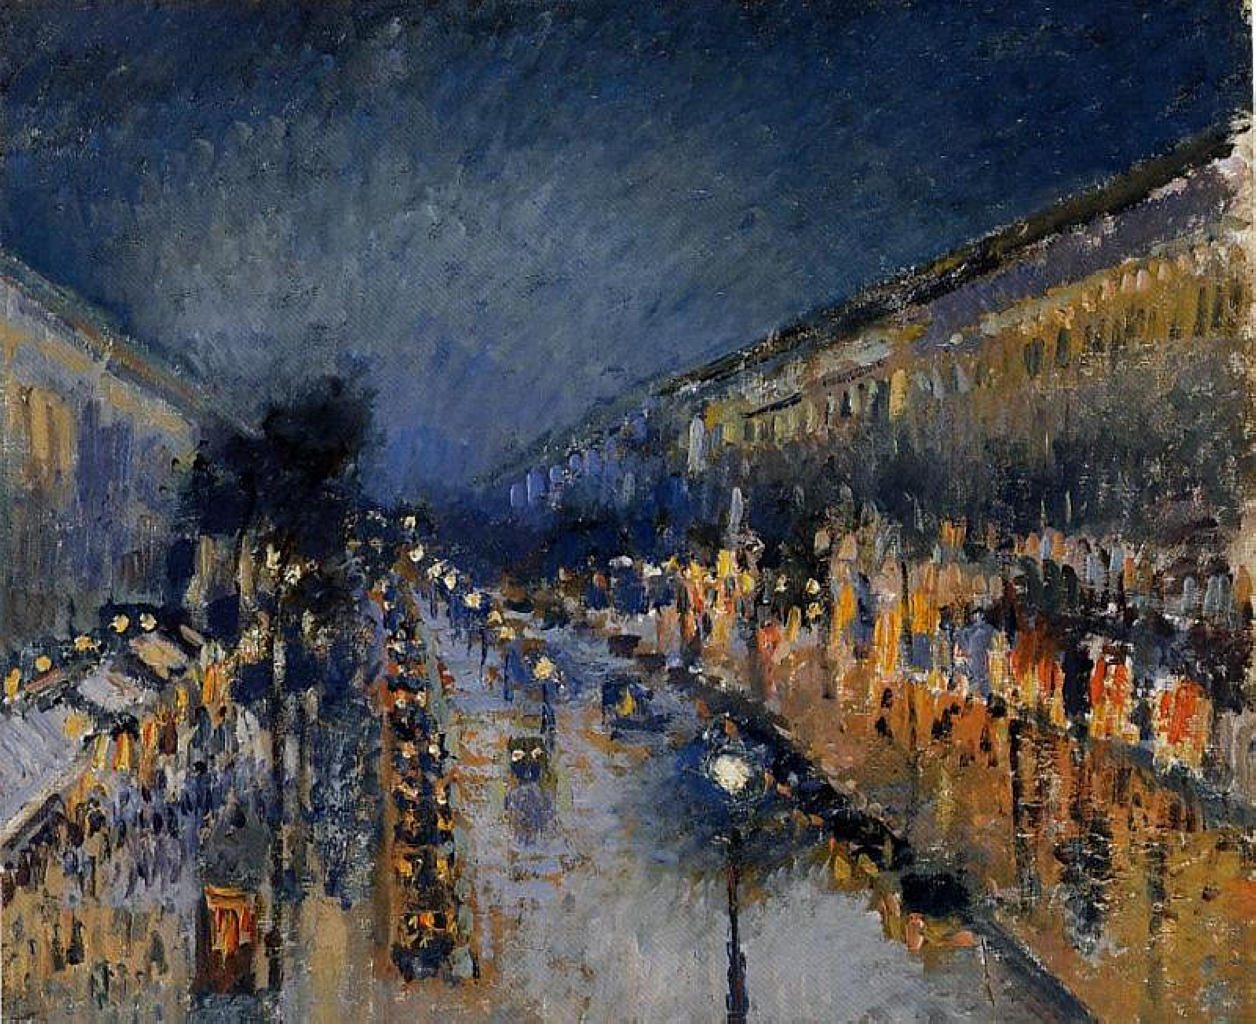 Boulevard Montmartre v noci by Camille Pissarro - 1897 - 53,3 cm x 64,8 cm 